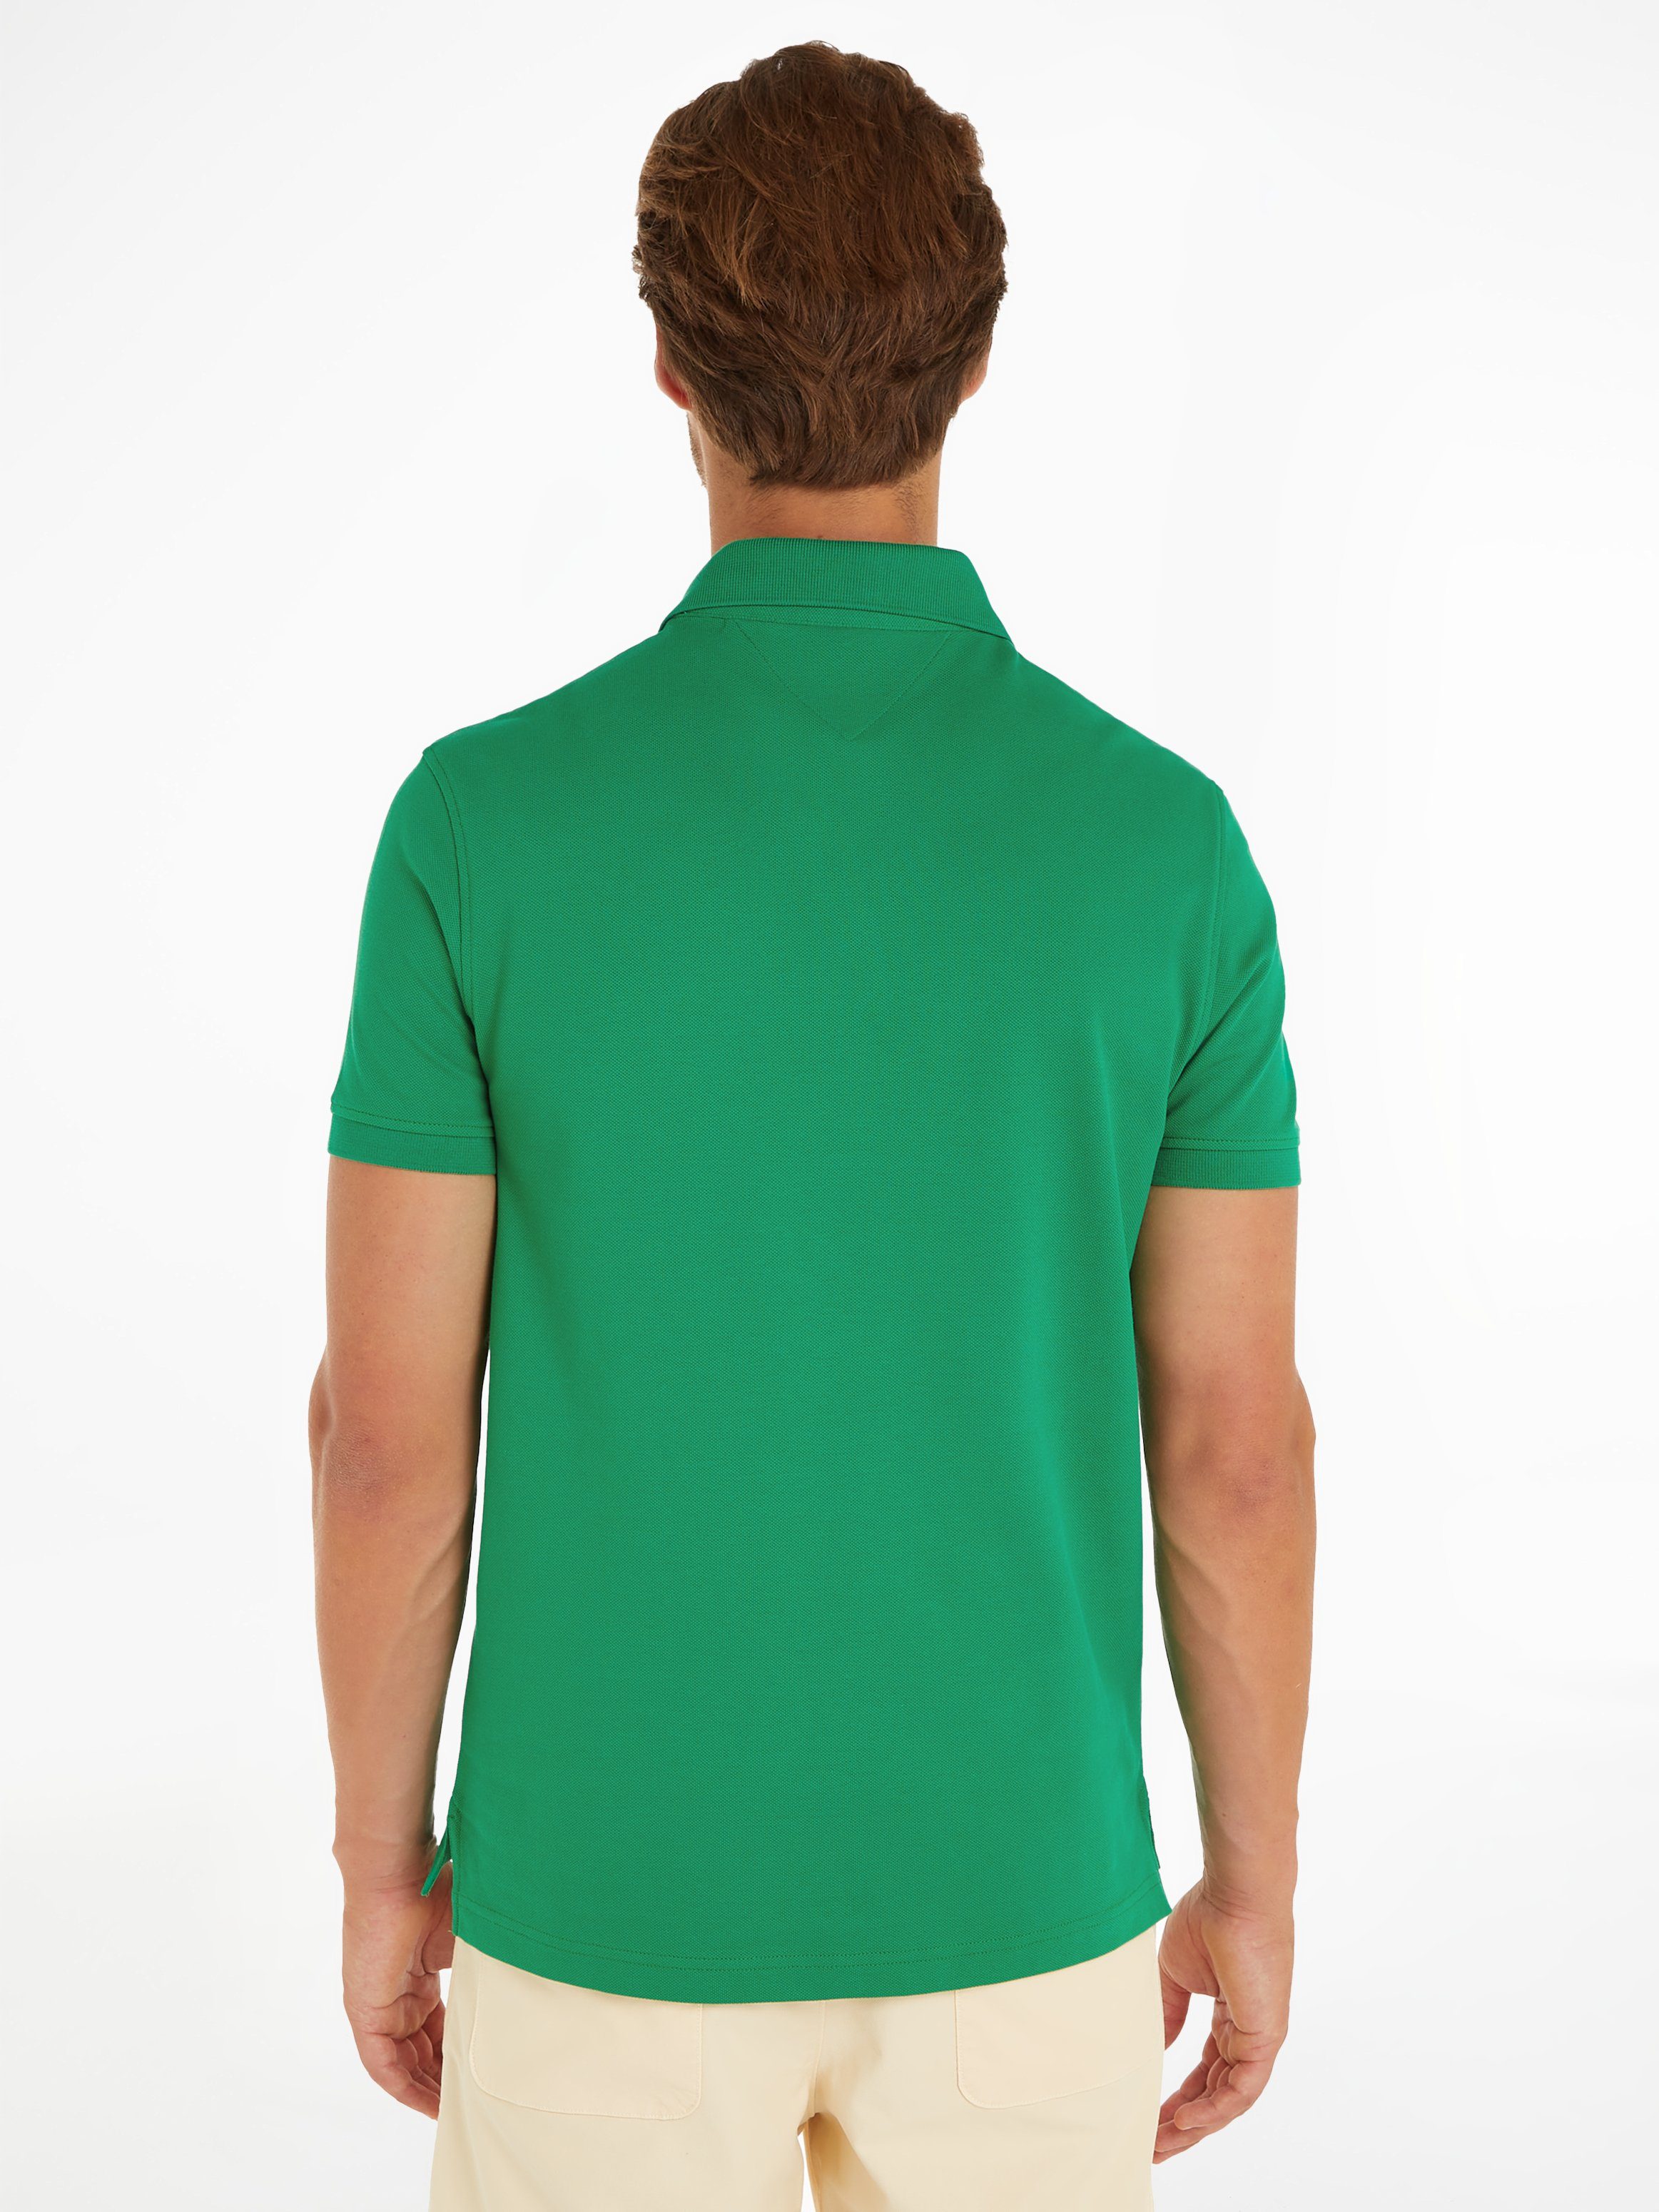 Green am Hilfiger mit 1985 Poloshirt Hilfiger POLO Kragen REGULAR Tommy Kontraststreifen Olympic Tommy innen